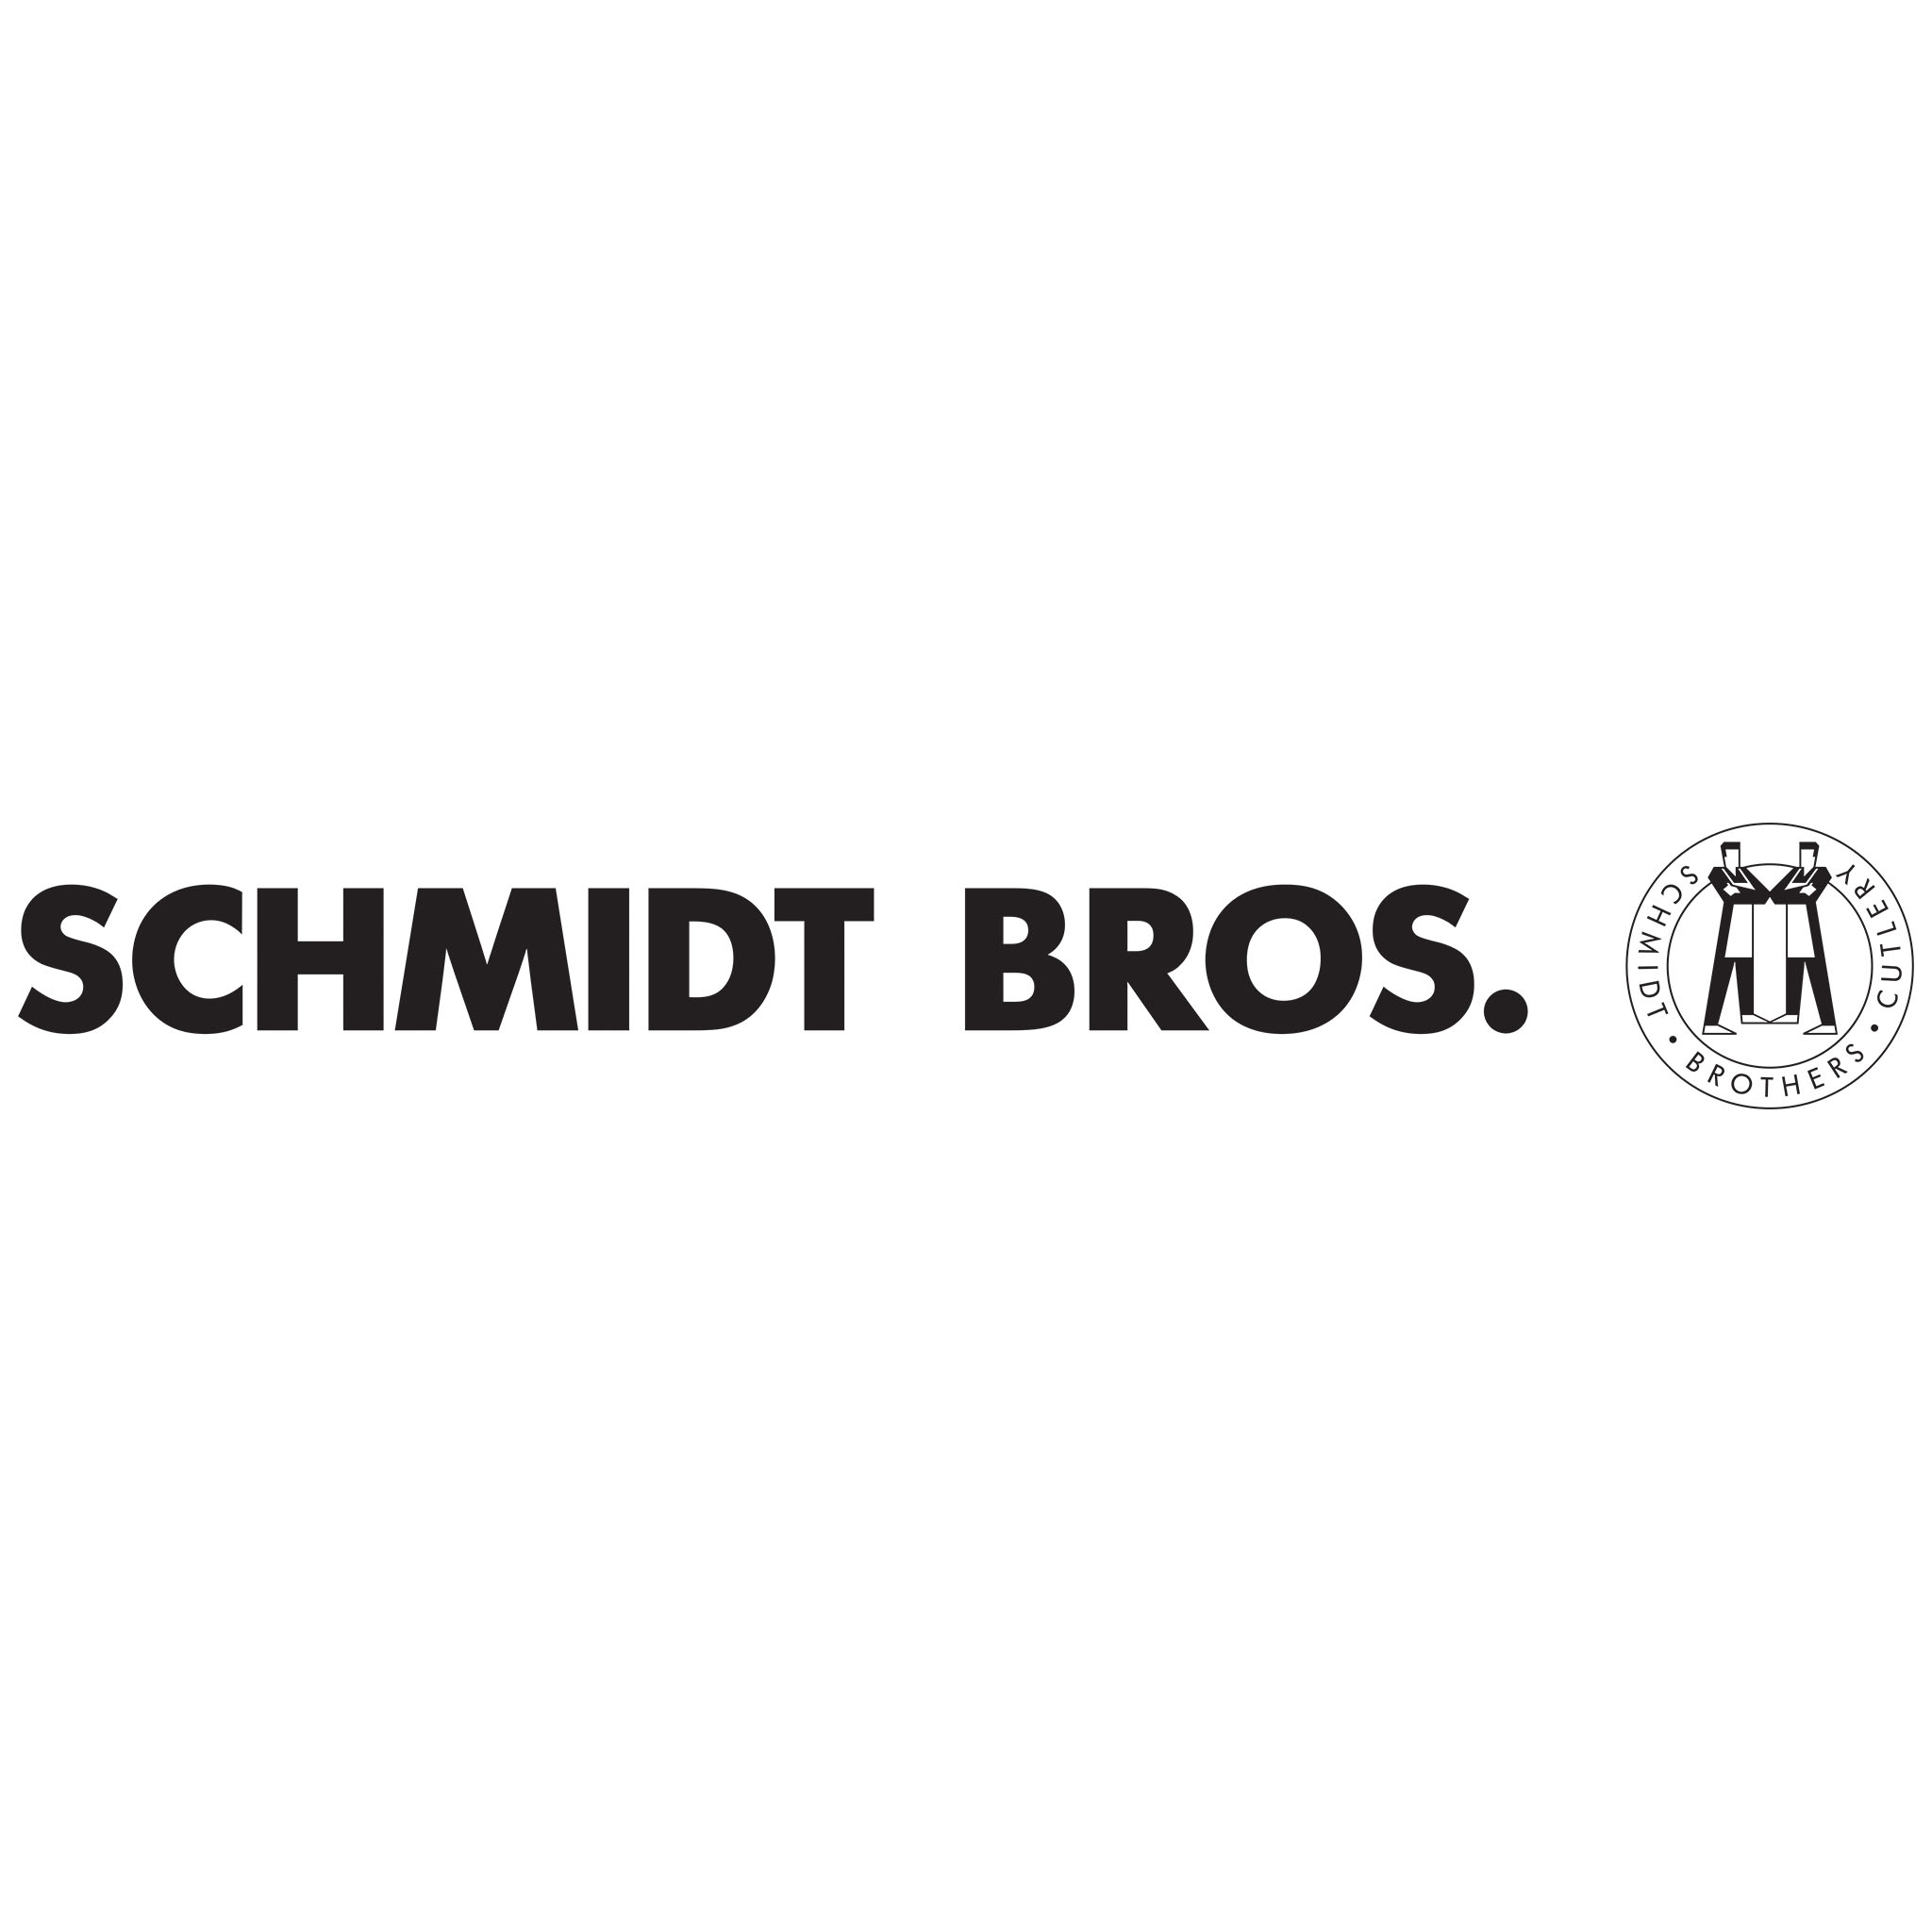 Schmidt Bros. logo